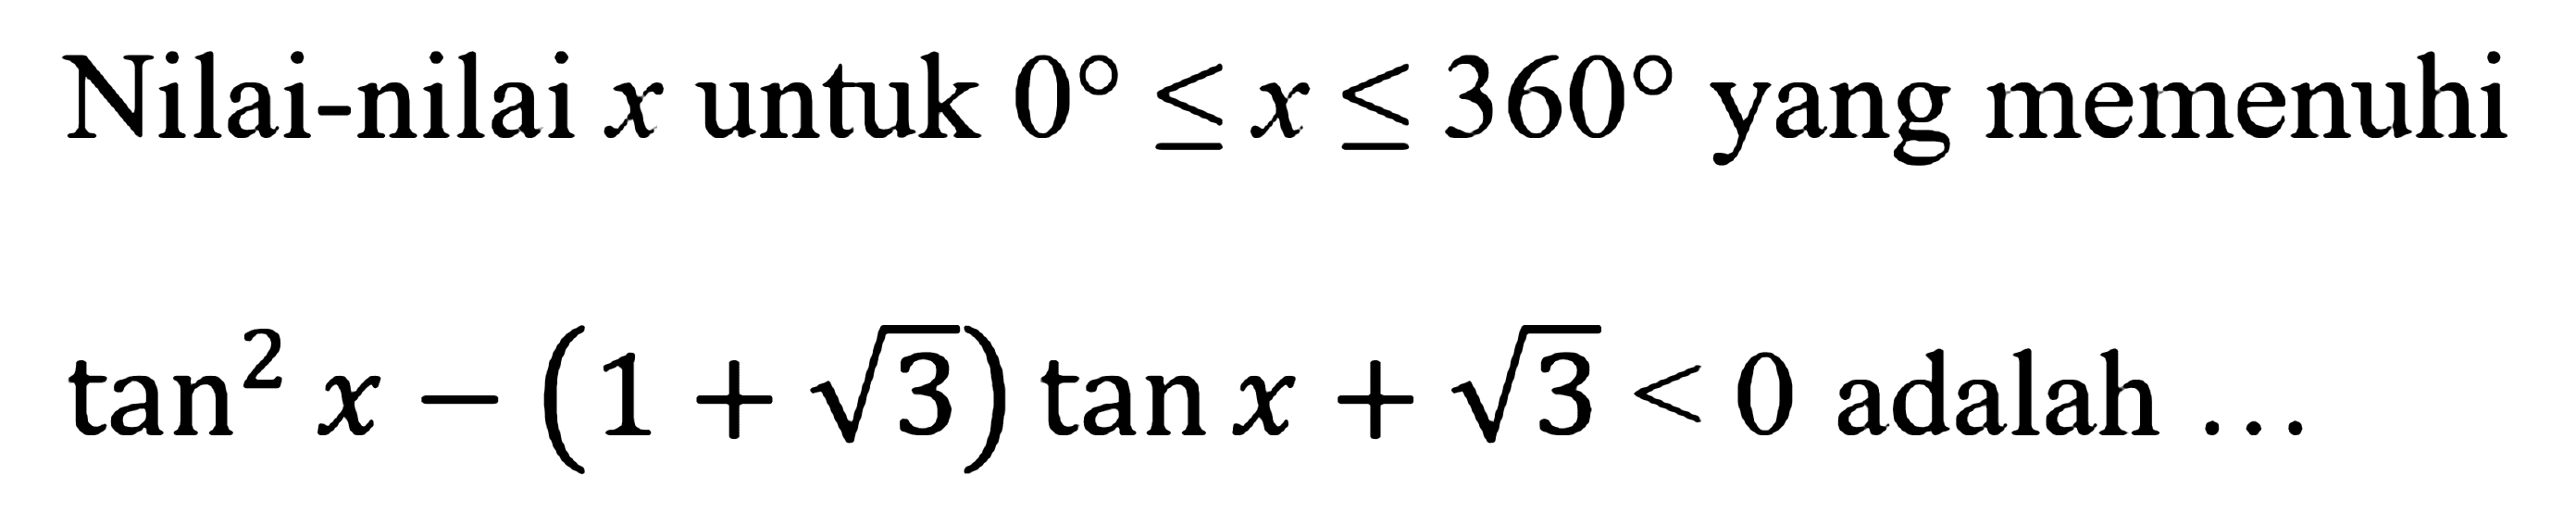 Nilai-nilai x untuk 0 <=x<=360 yang memenuhi tan^2 x-(1+akar(3)) tan x+akar(3)<0 adalah ...